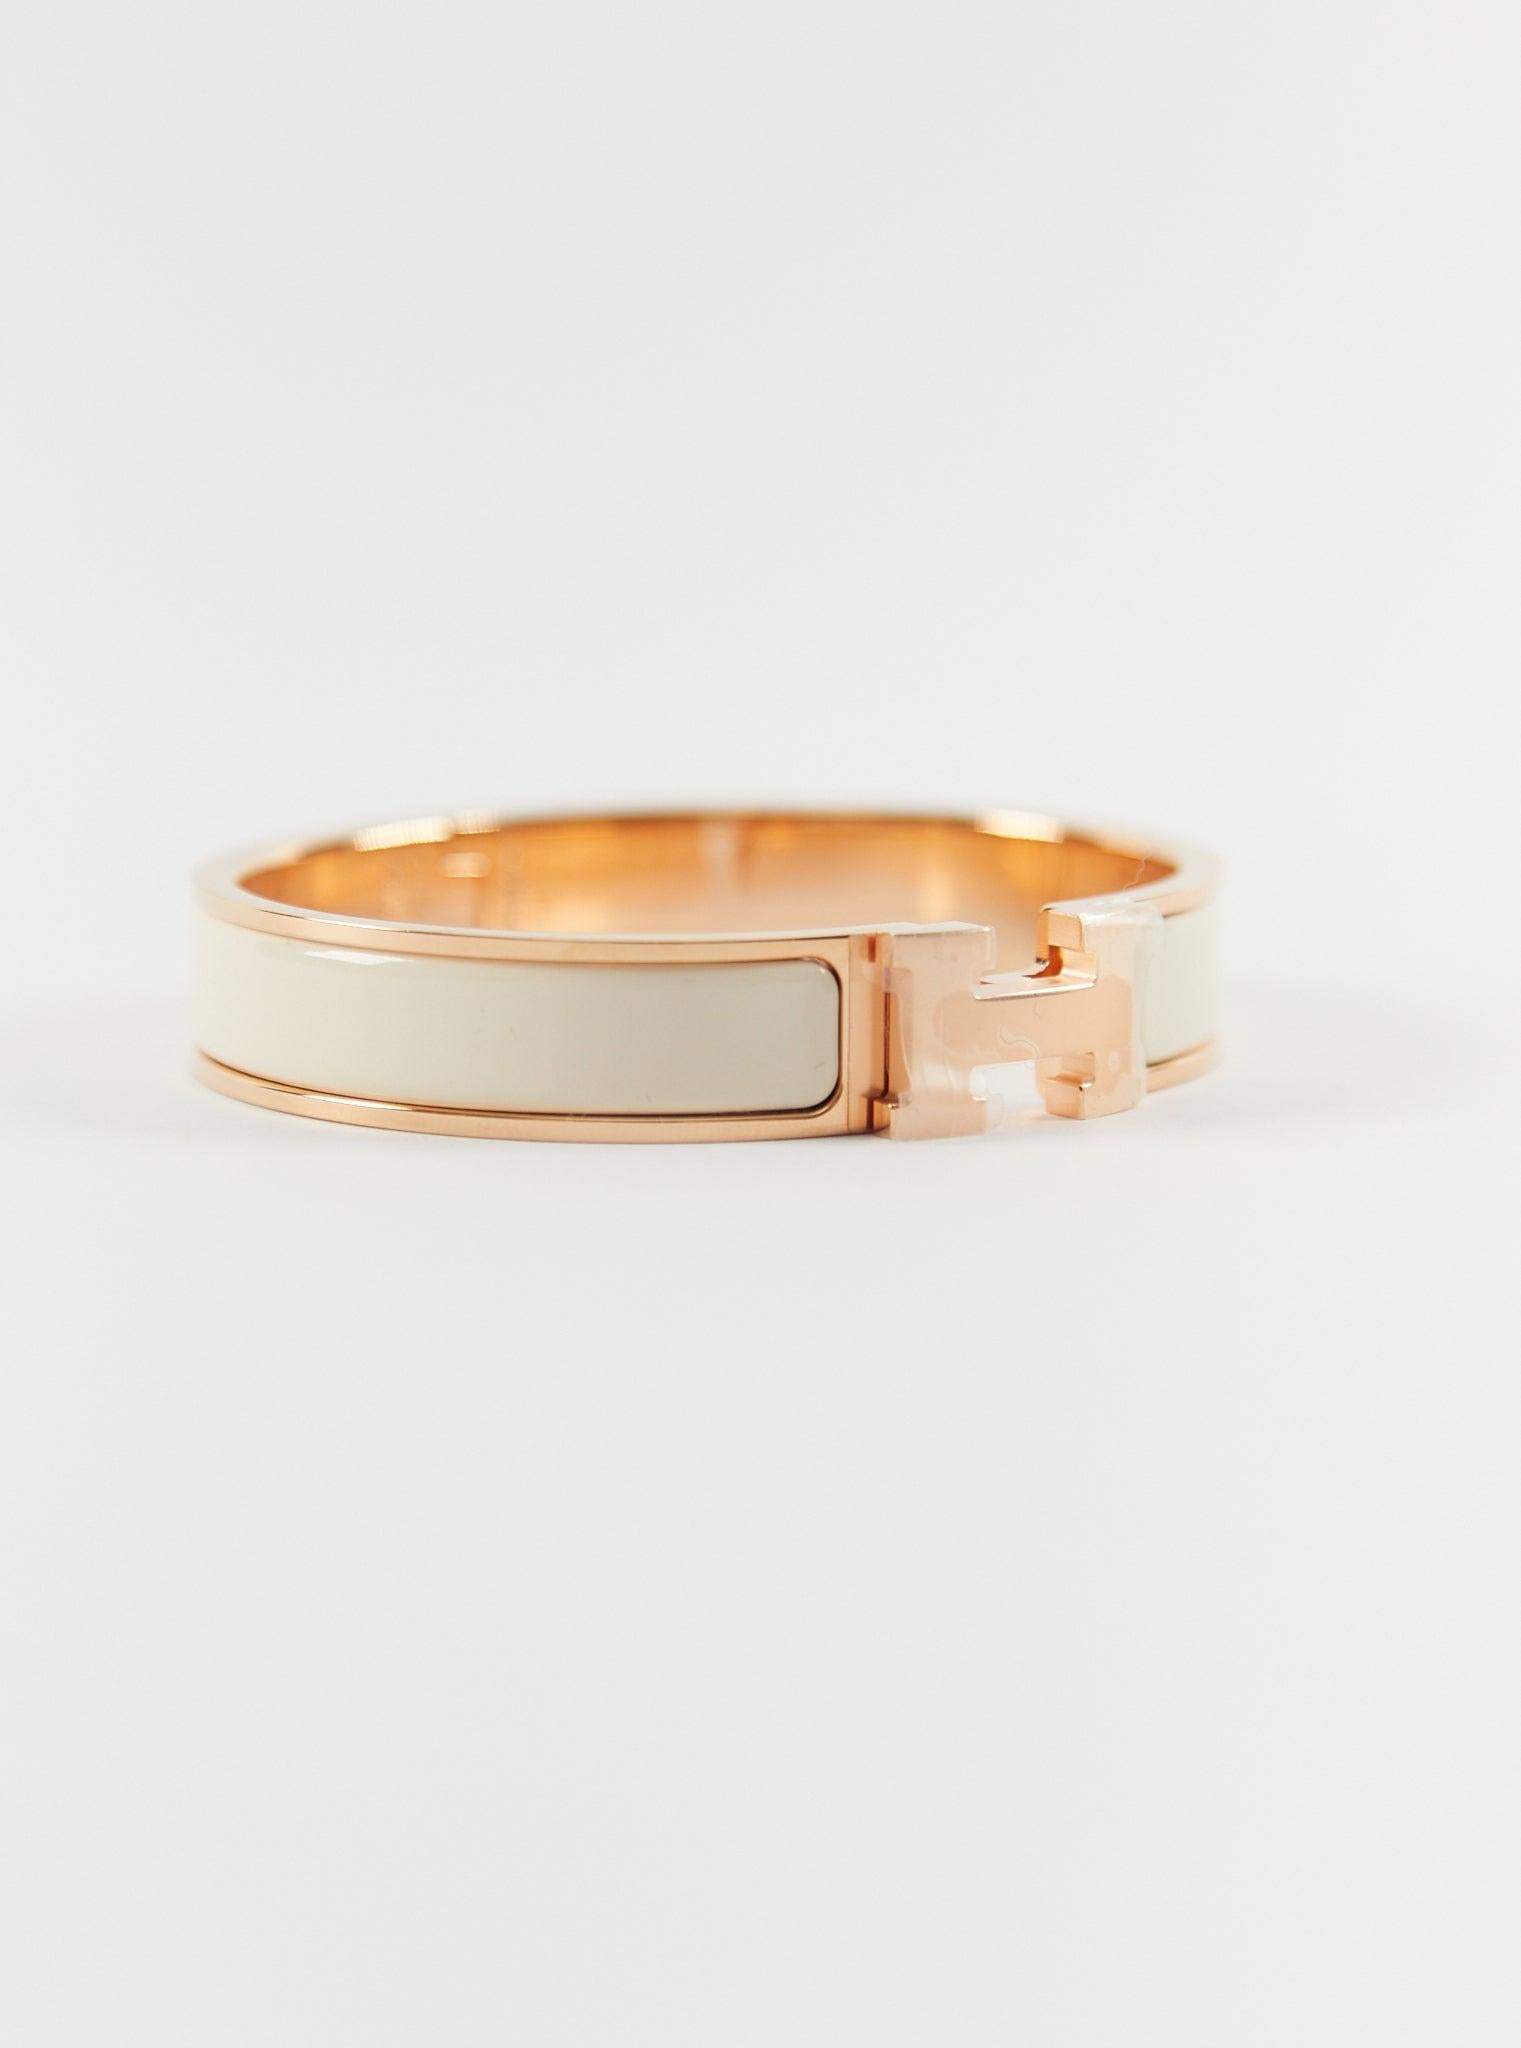 Hermès Clic H PM Armband in Creme & Rose Gold

Größe des Handgelenks: 16.8 cm  Breite: 12 mm

Hergestellt in Frankreich